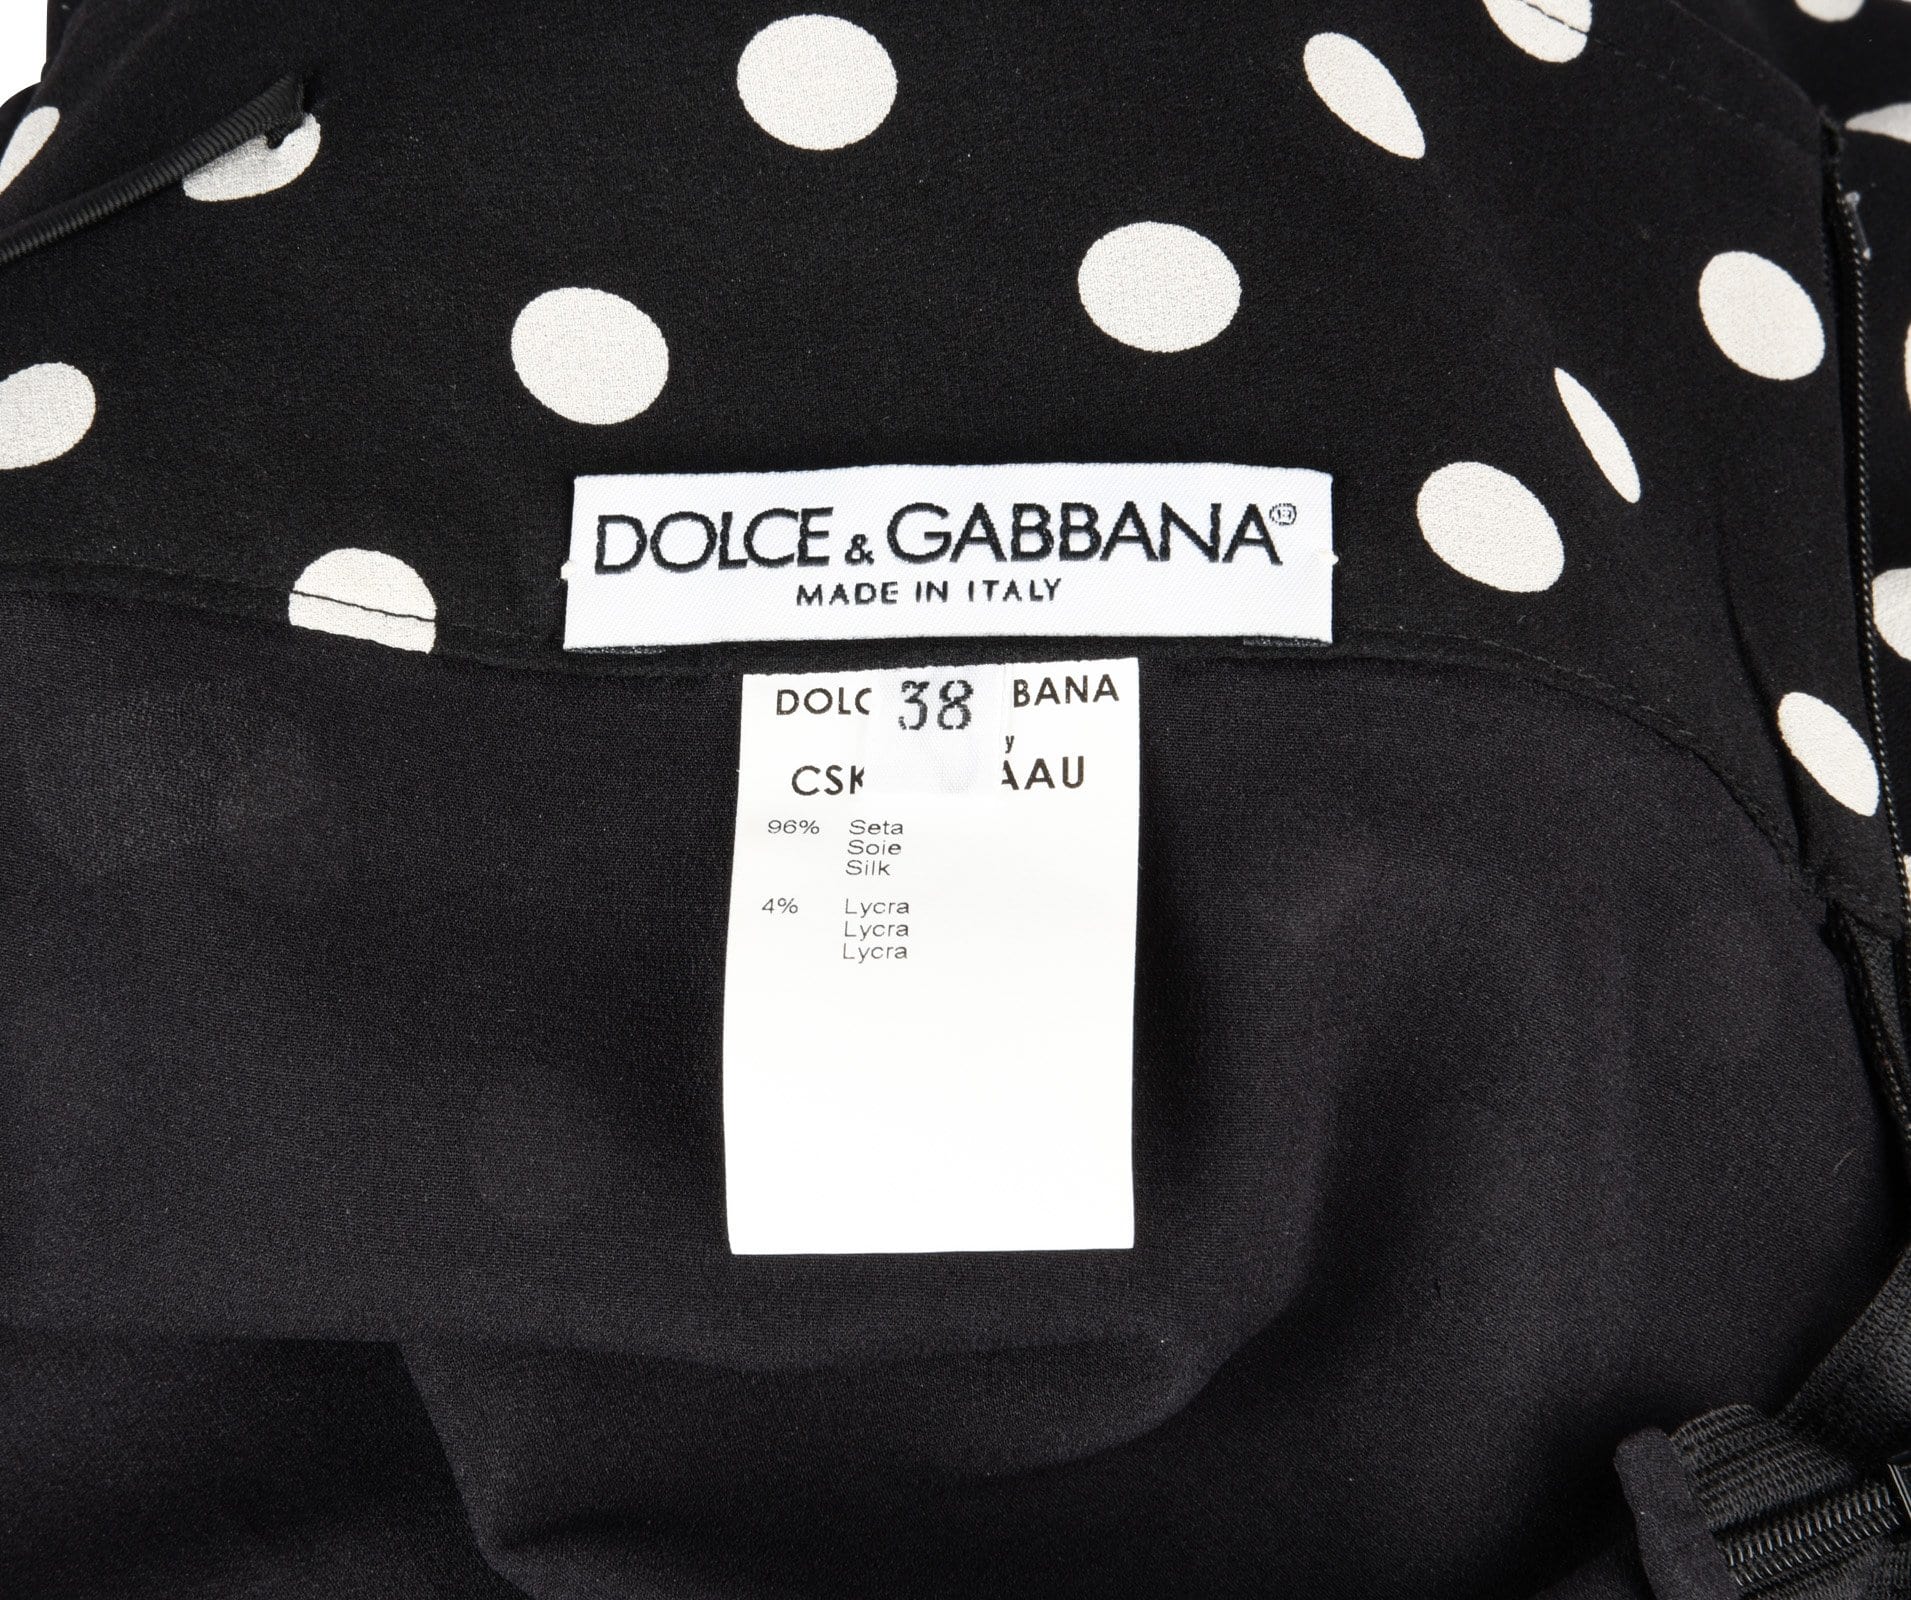 Dolce&Gabbana Skirt Polka Dot Lace Trim Stretch Pencil  38 / 4 - mightychic